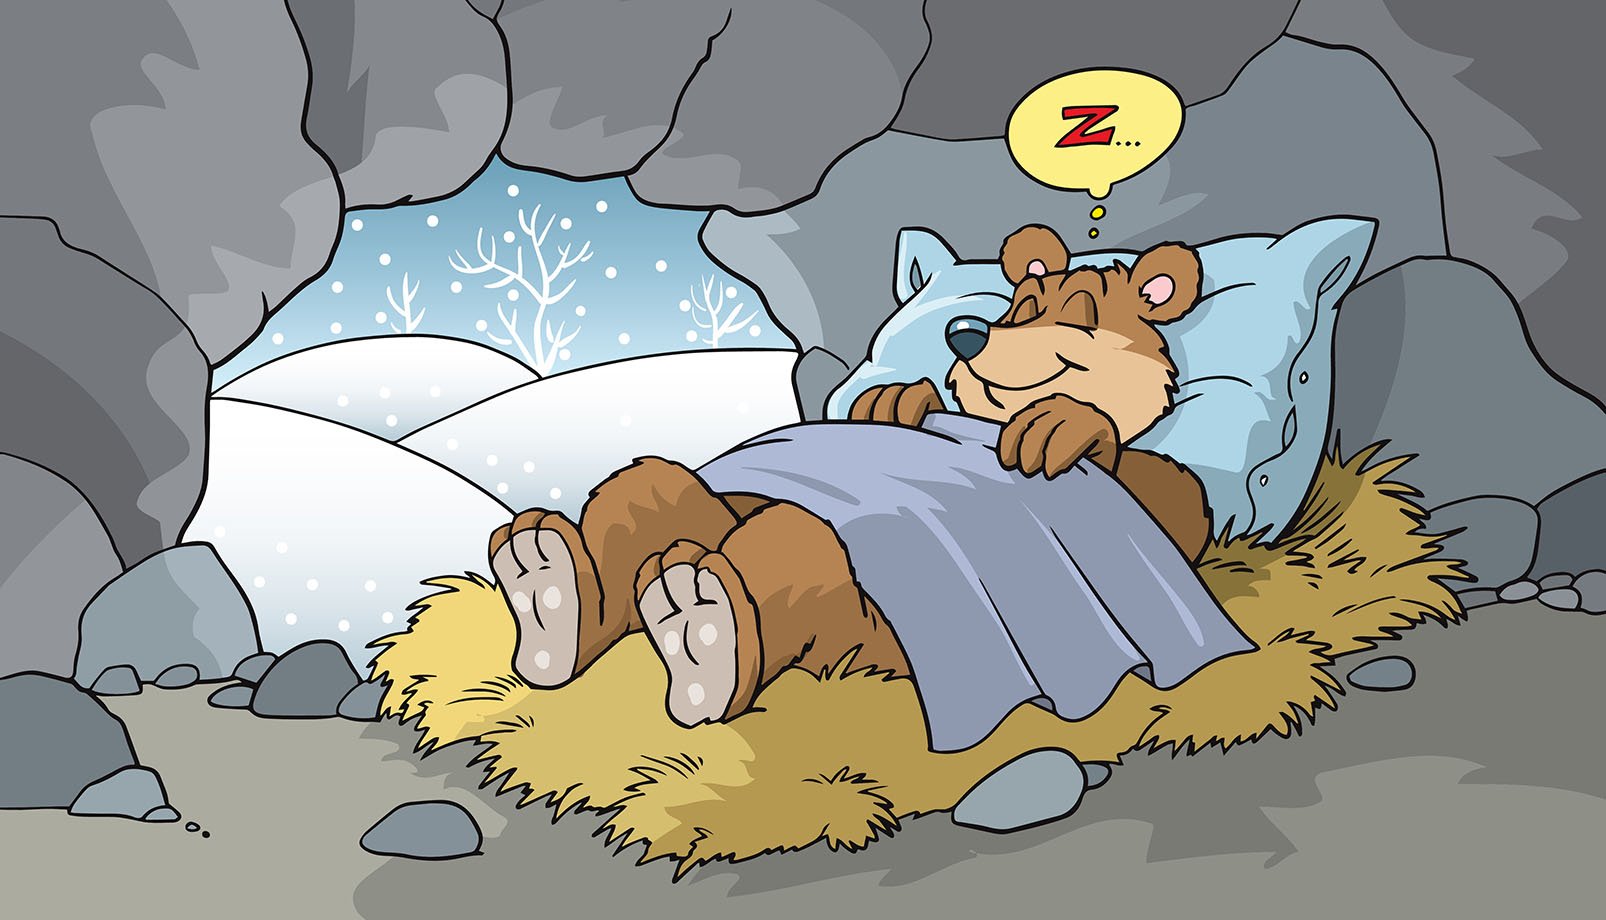 hibernating bear